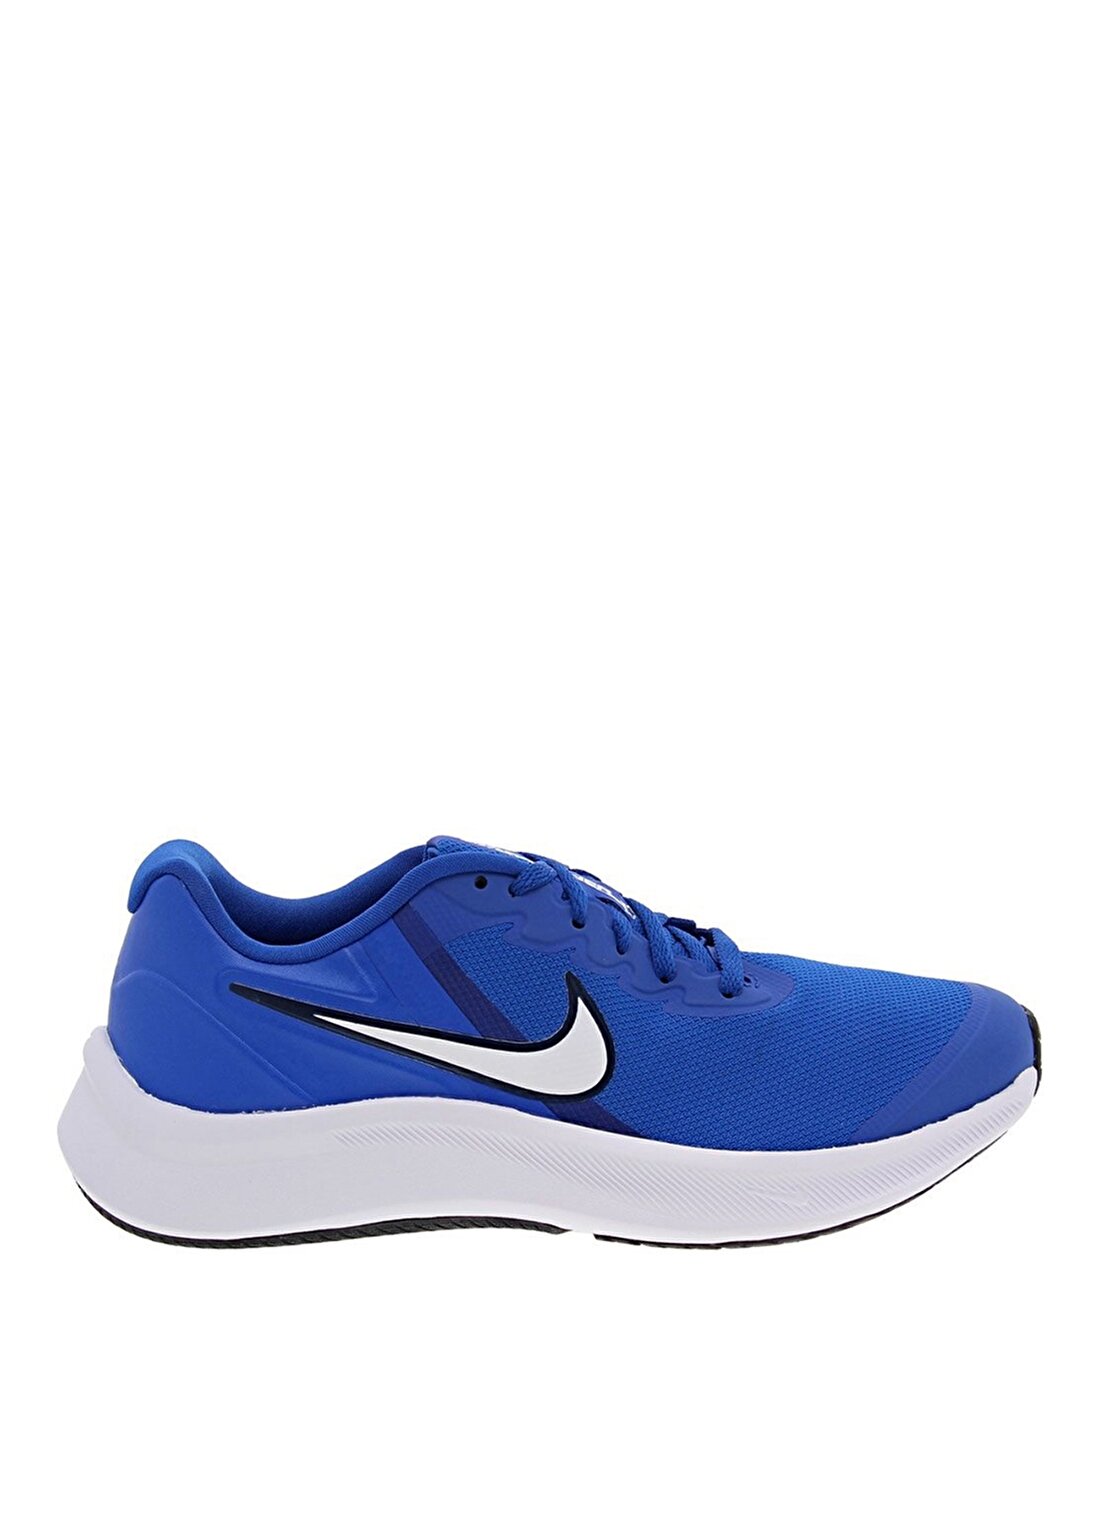 Nike Mavi Erkek Çocuk Yürüyüs Ayakkabisi DA2776-403 NIKE STAR RUNNER 3 (GS)